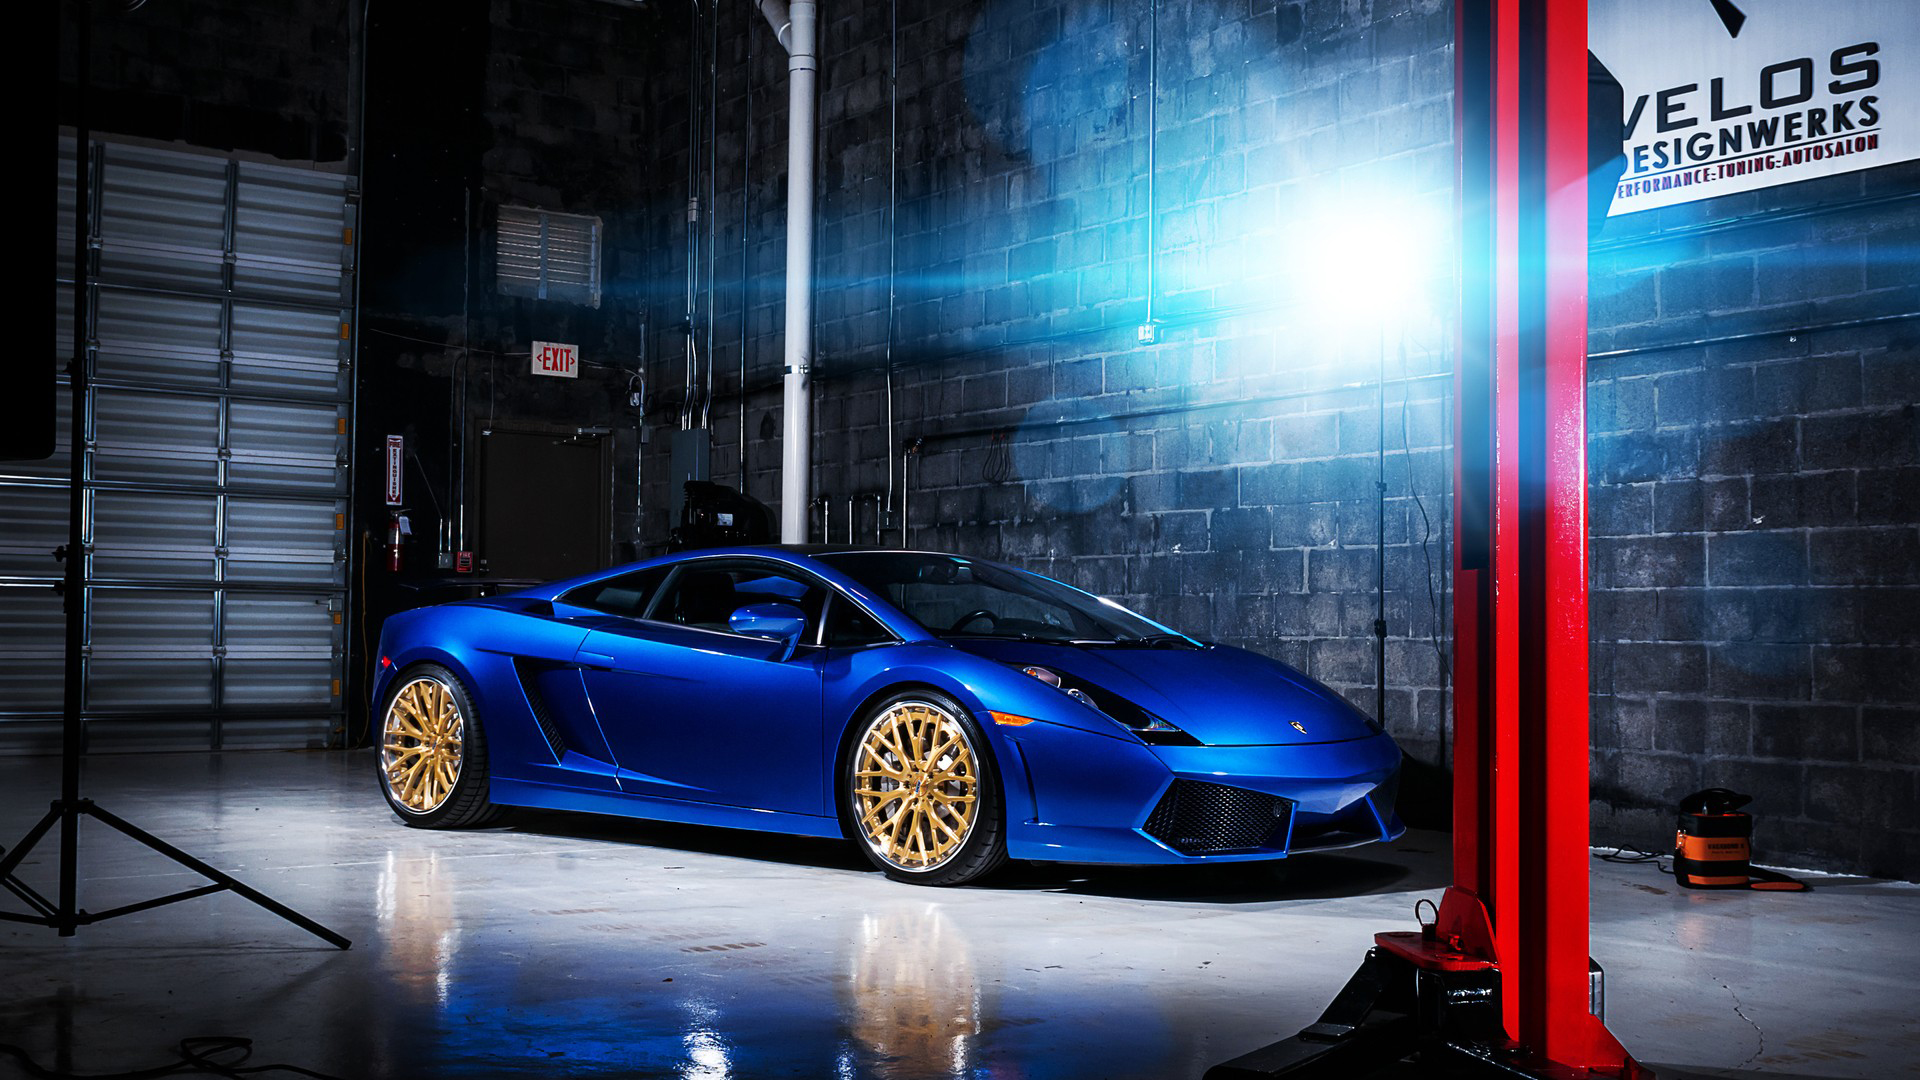 Lamborghini Gallardo Blue Cars Digital Art Vehicle 1920x1080